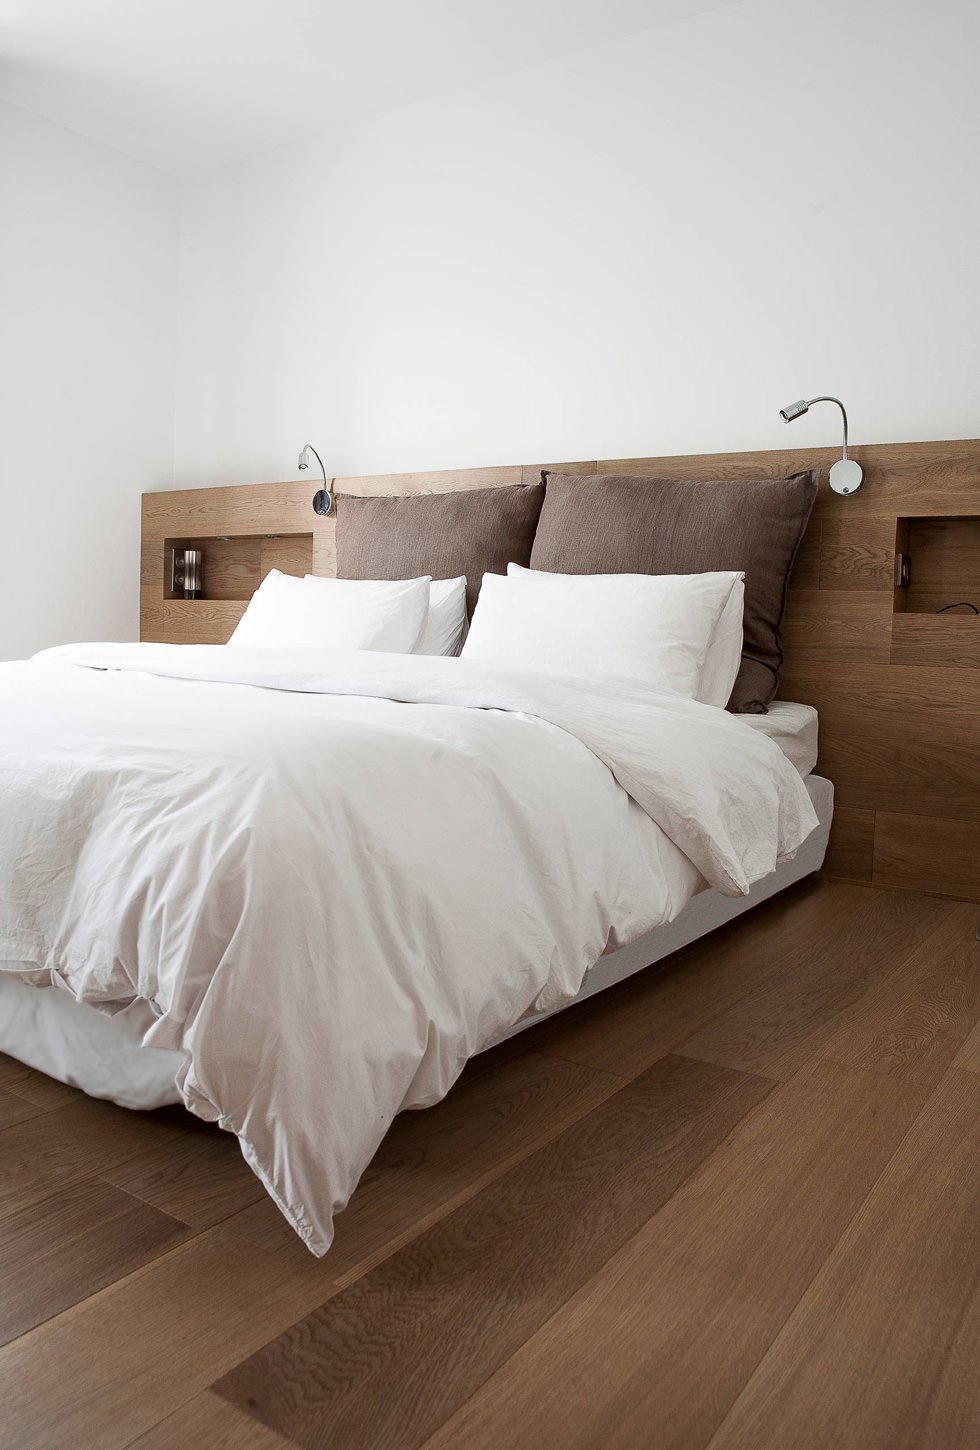 Stanza da letto con linee minimal moderne con testata in legno rovere. Colori bianco e marrone